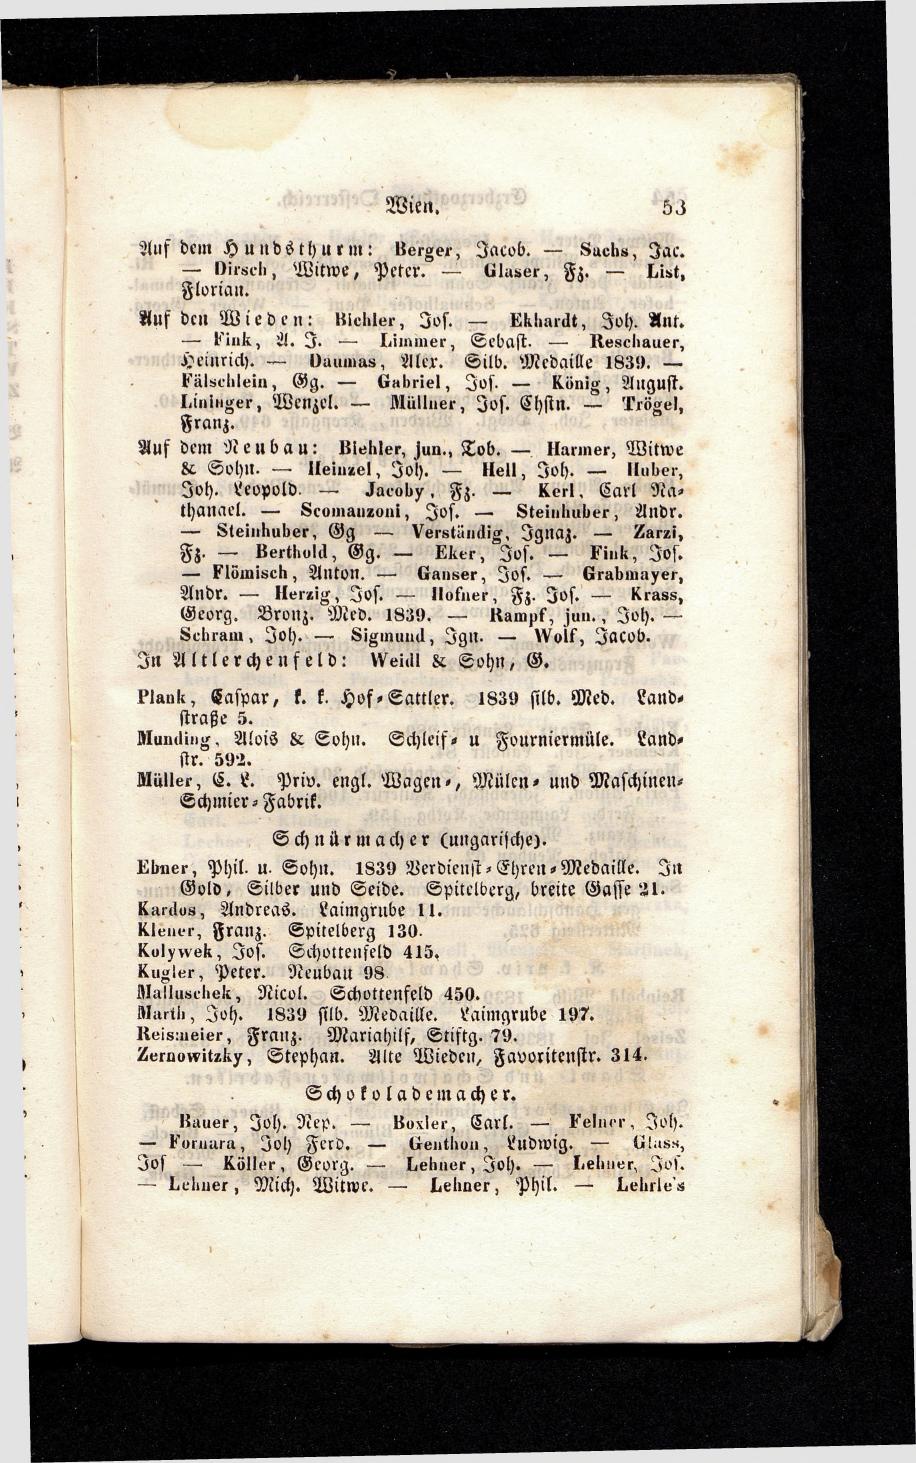 Grosses Adressbuch der Kaufleute. No. 13. Oesterreich ober u. unter der Enns 1844 - Seite 57